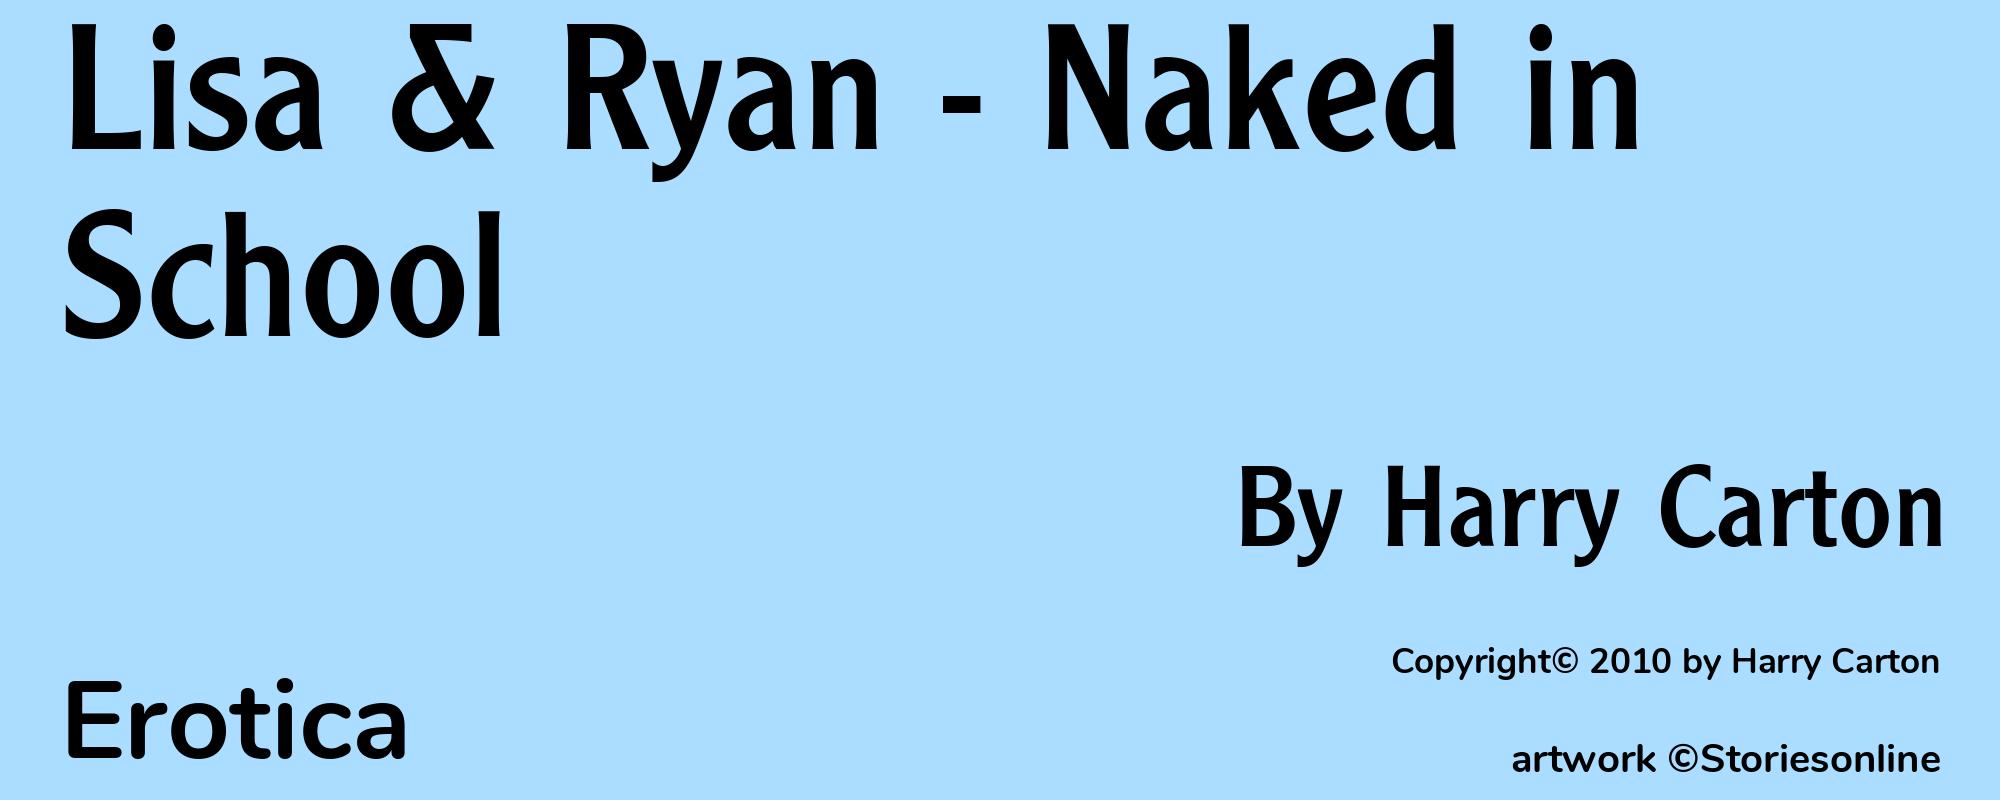 Lisa & Ryan - Naked in School - Cover